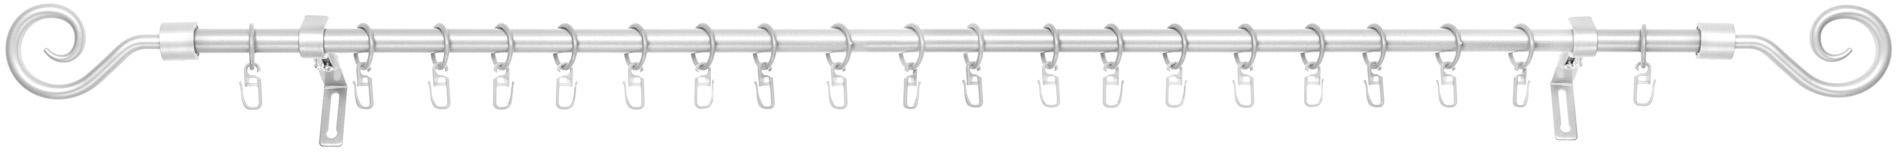 Gardinenstange Kringel, LICHTBLICK ORIGINAL, Ø 16 mm, 1-läufig, Fixmaß, mit Bohren, verschraubt, Metall silberfarben